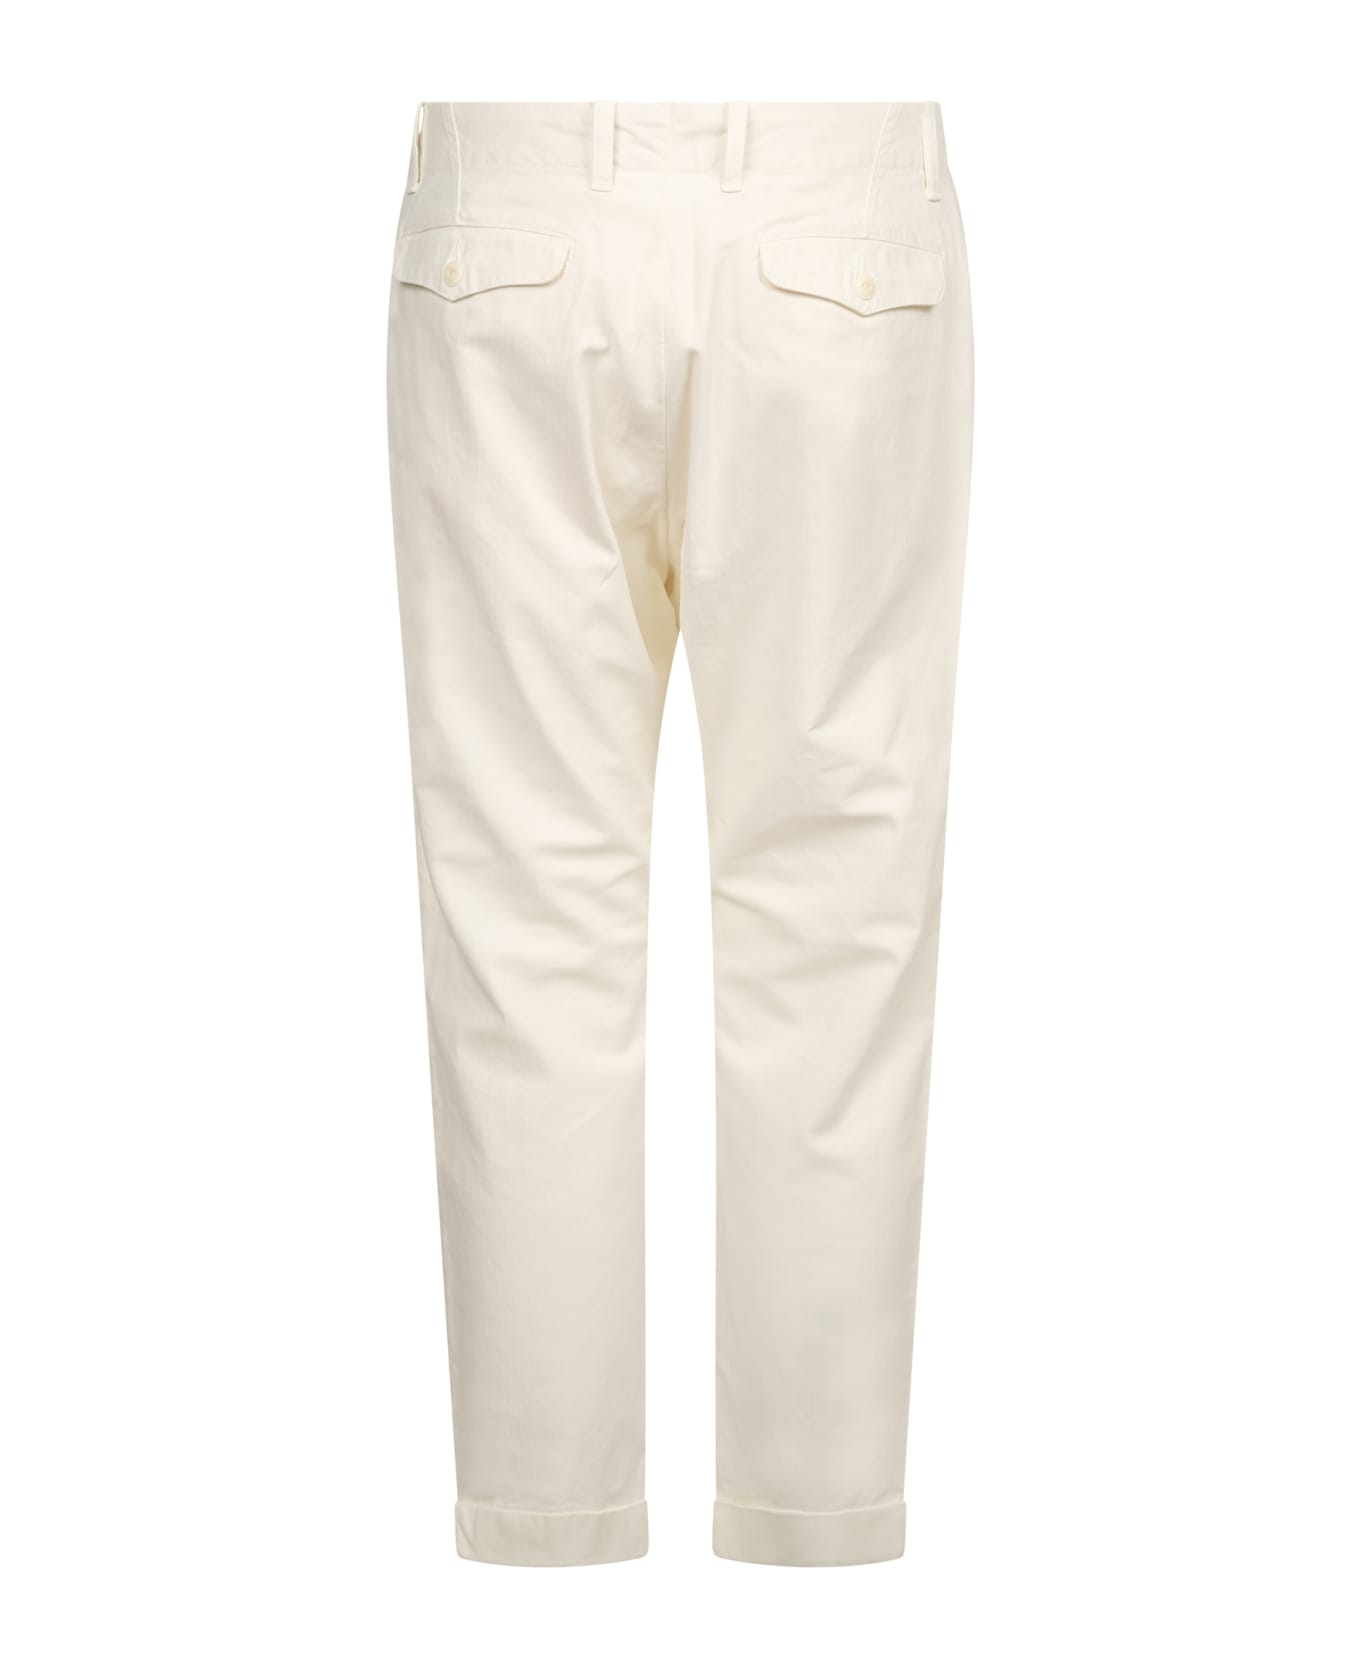 Original Vintage Style White Trousers - White